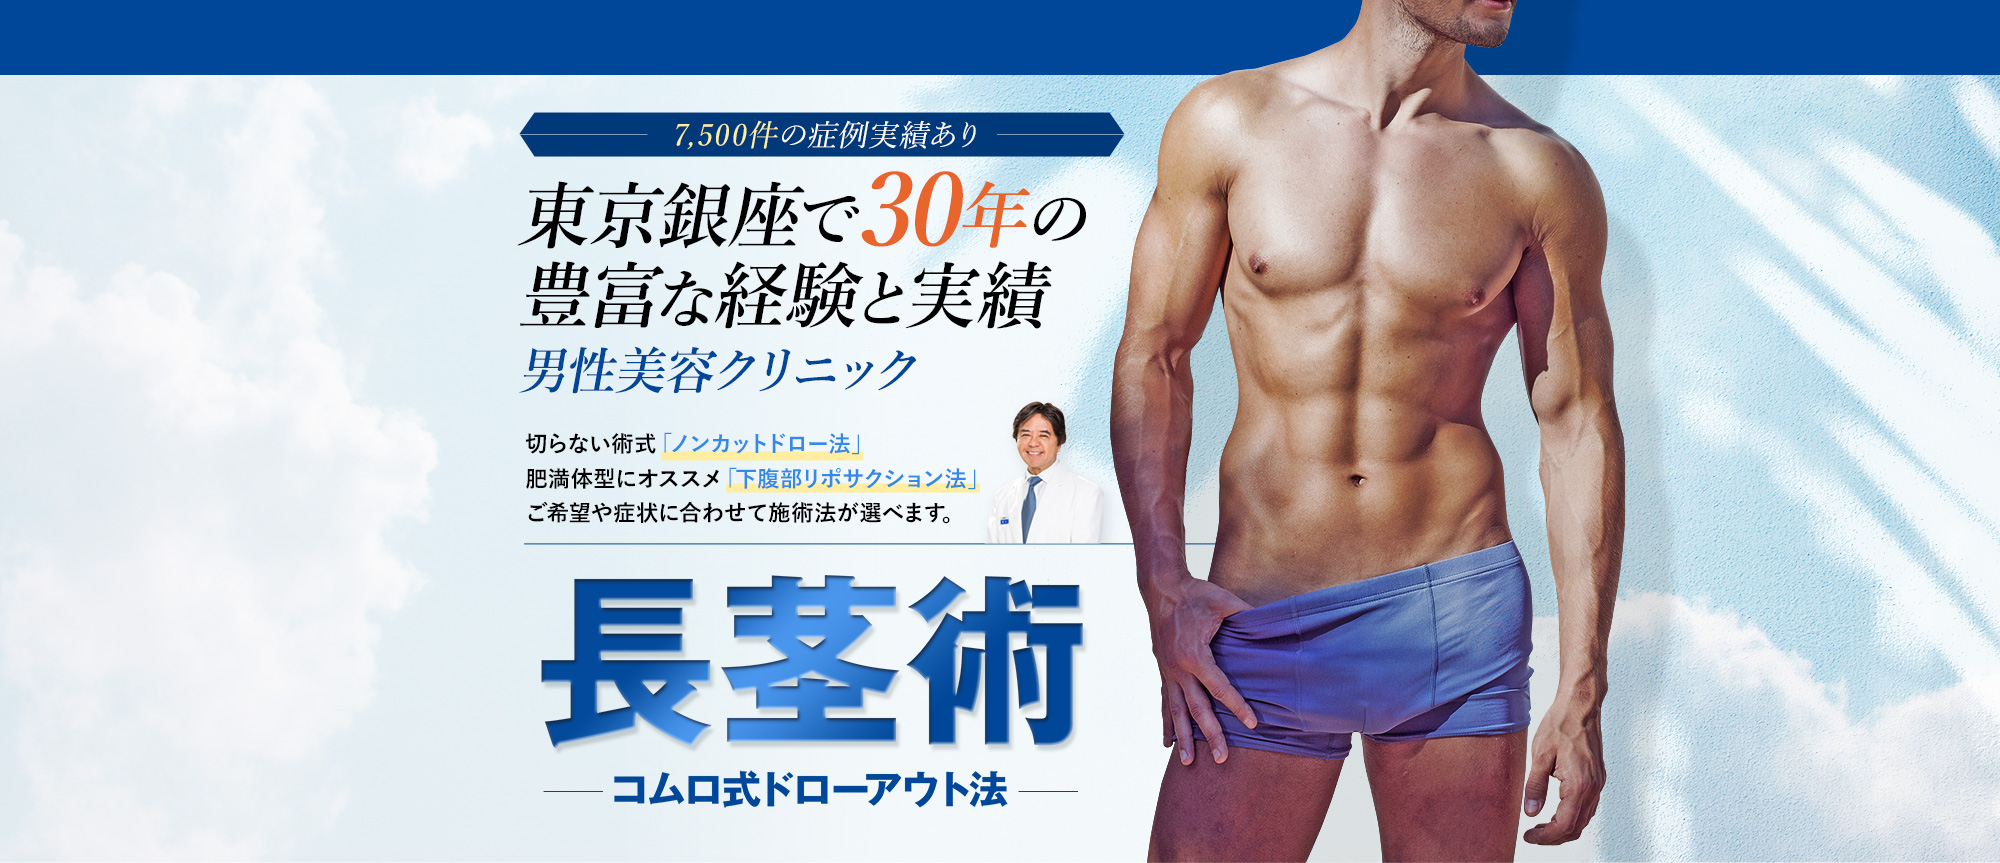 7,500件の症例実績あり東京銀座で30年の豊富な経験と実績 男性美容クリニック 切らない術式「ノンカットドロー法」 肥満体型にオススメ「下腹部リポサクション法」 ご希望や症状に合わせて施術法が選べます。長茎術 コムロ式ドローアウト法